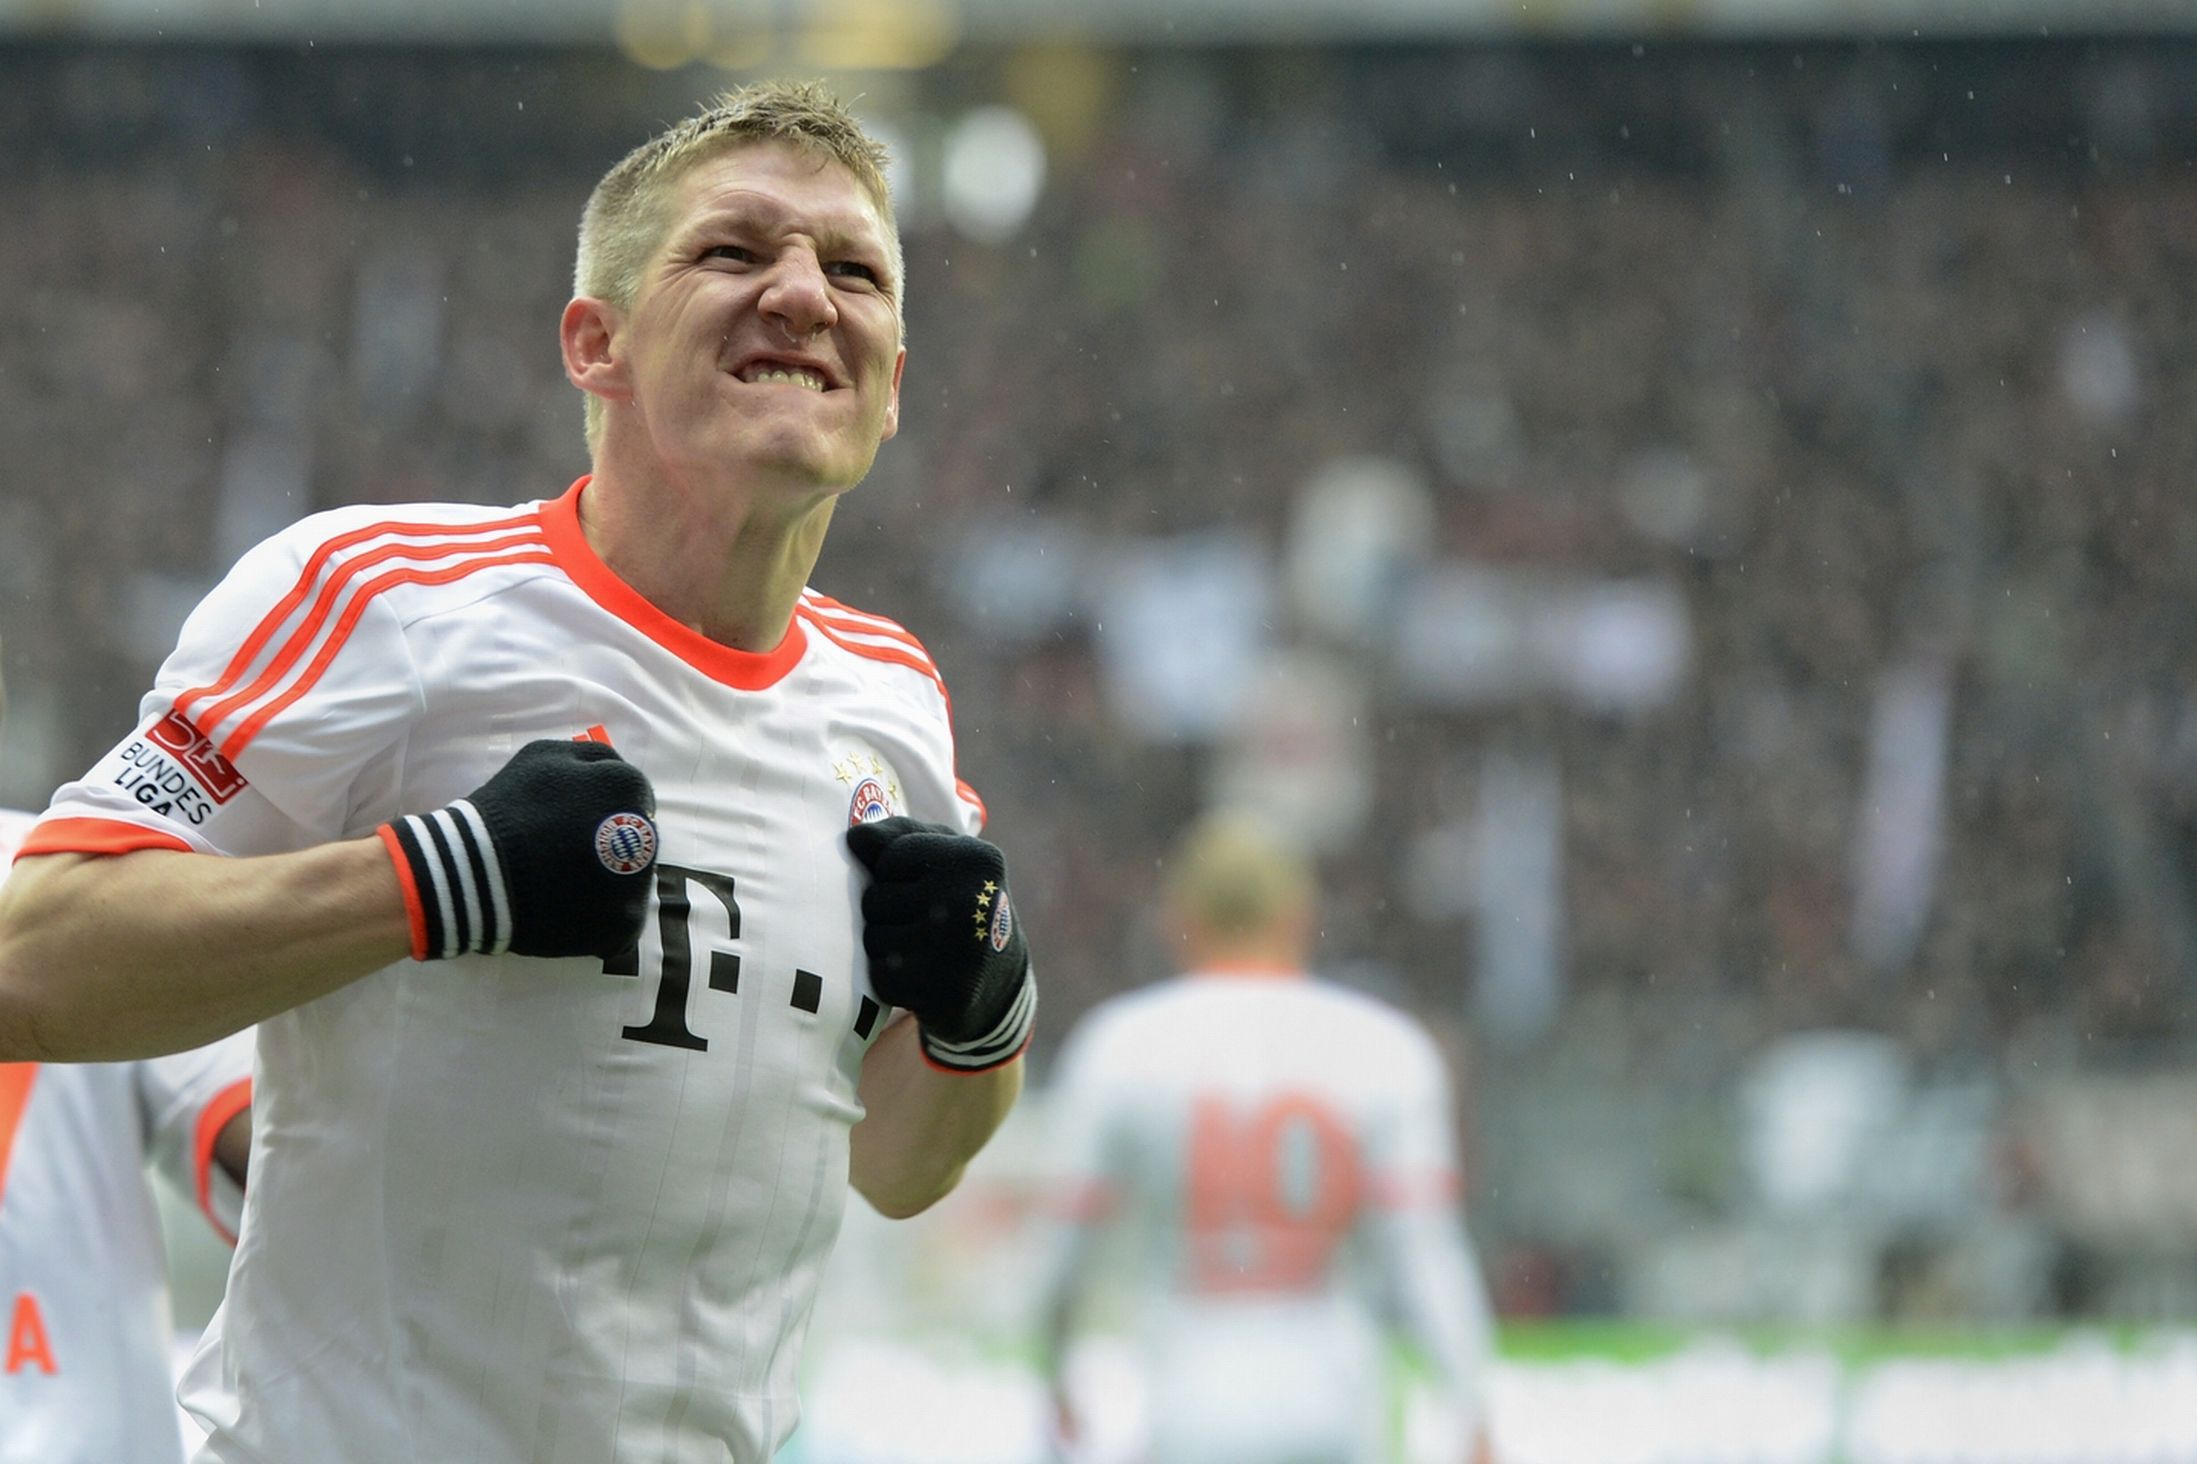 Bayern Bastian Schweinsteiger scored a goal wallpapers and images ...